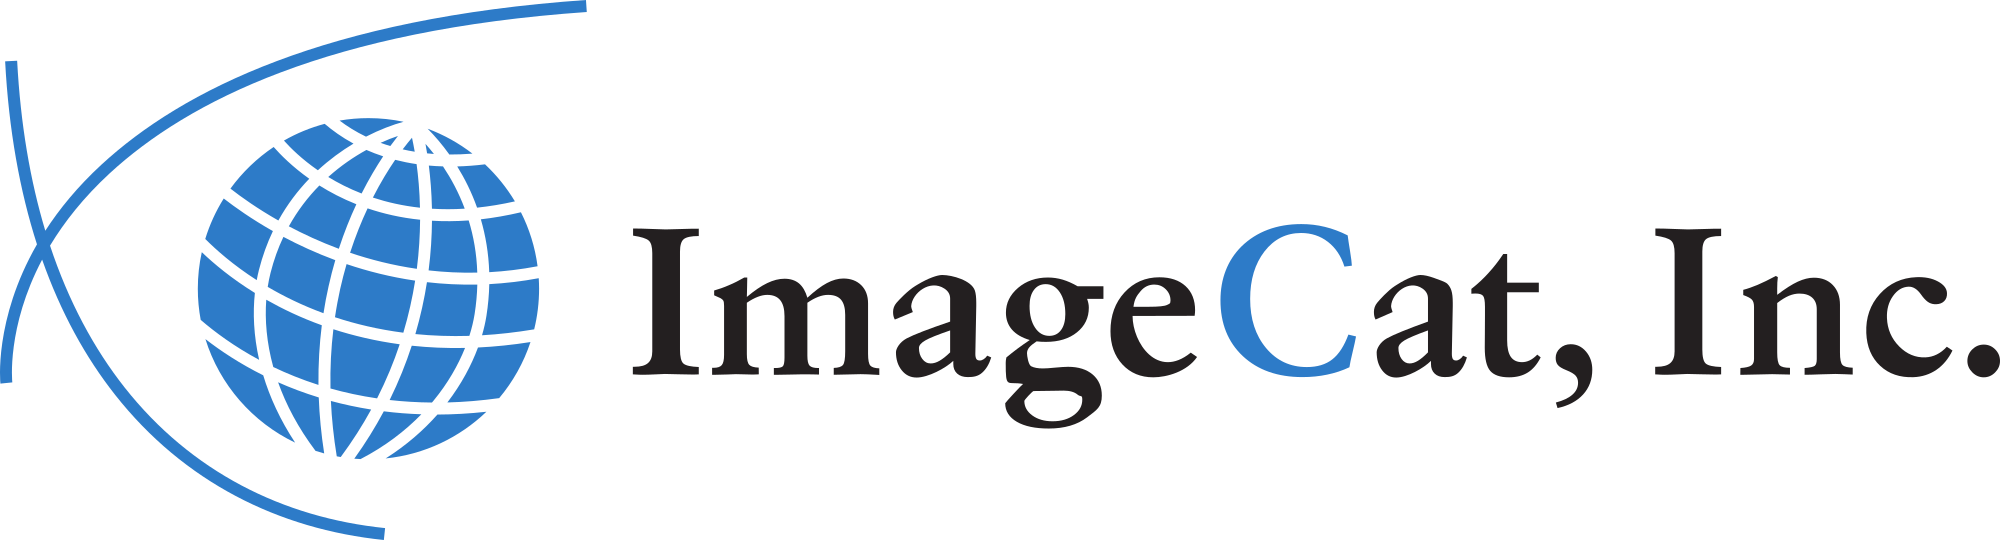 imagecat logo transparent 2000x540